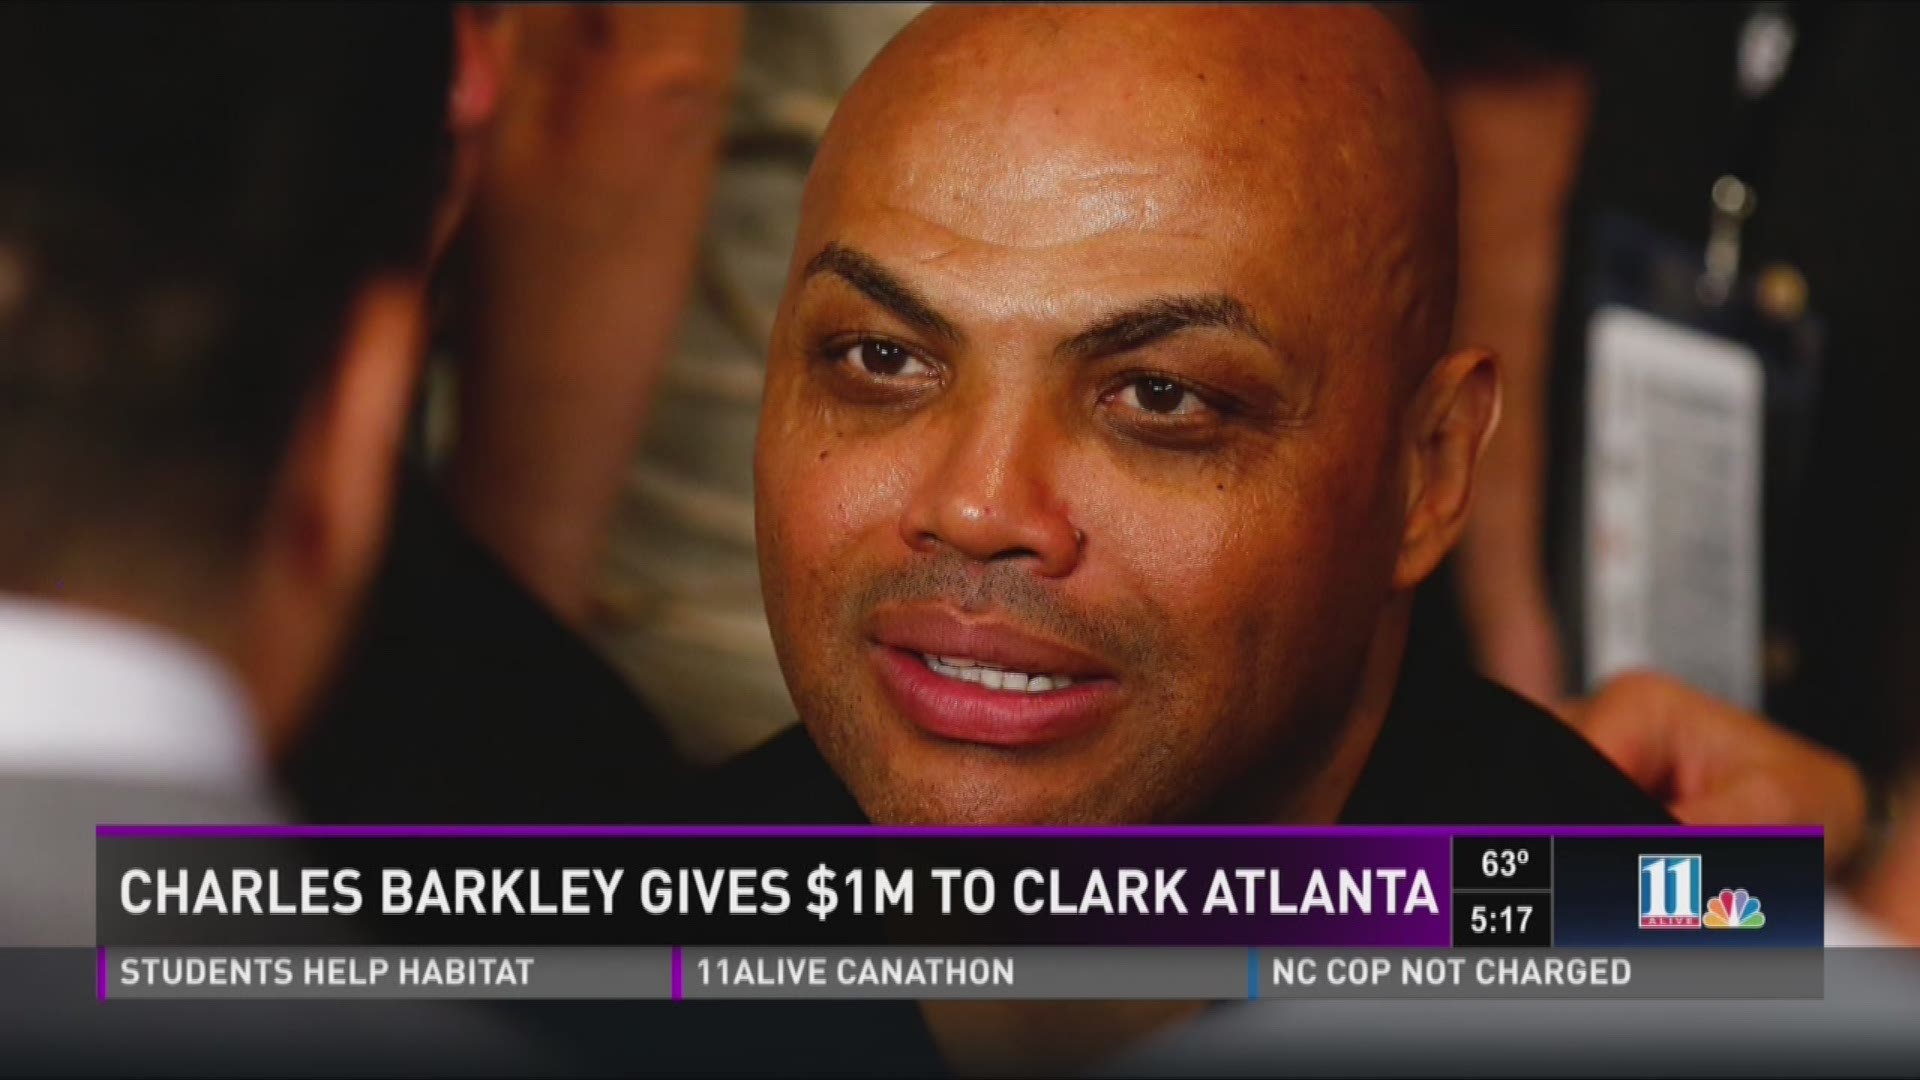 Charles Barkley gives $1M to Clark Atlanta